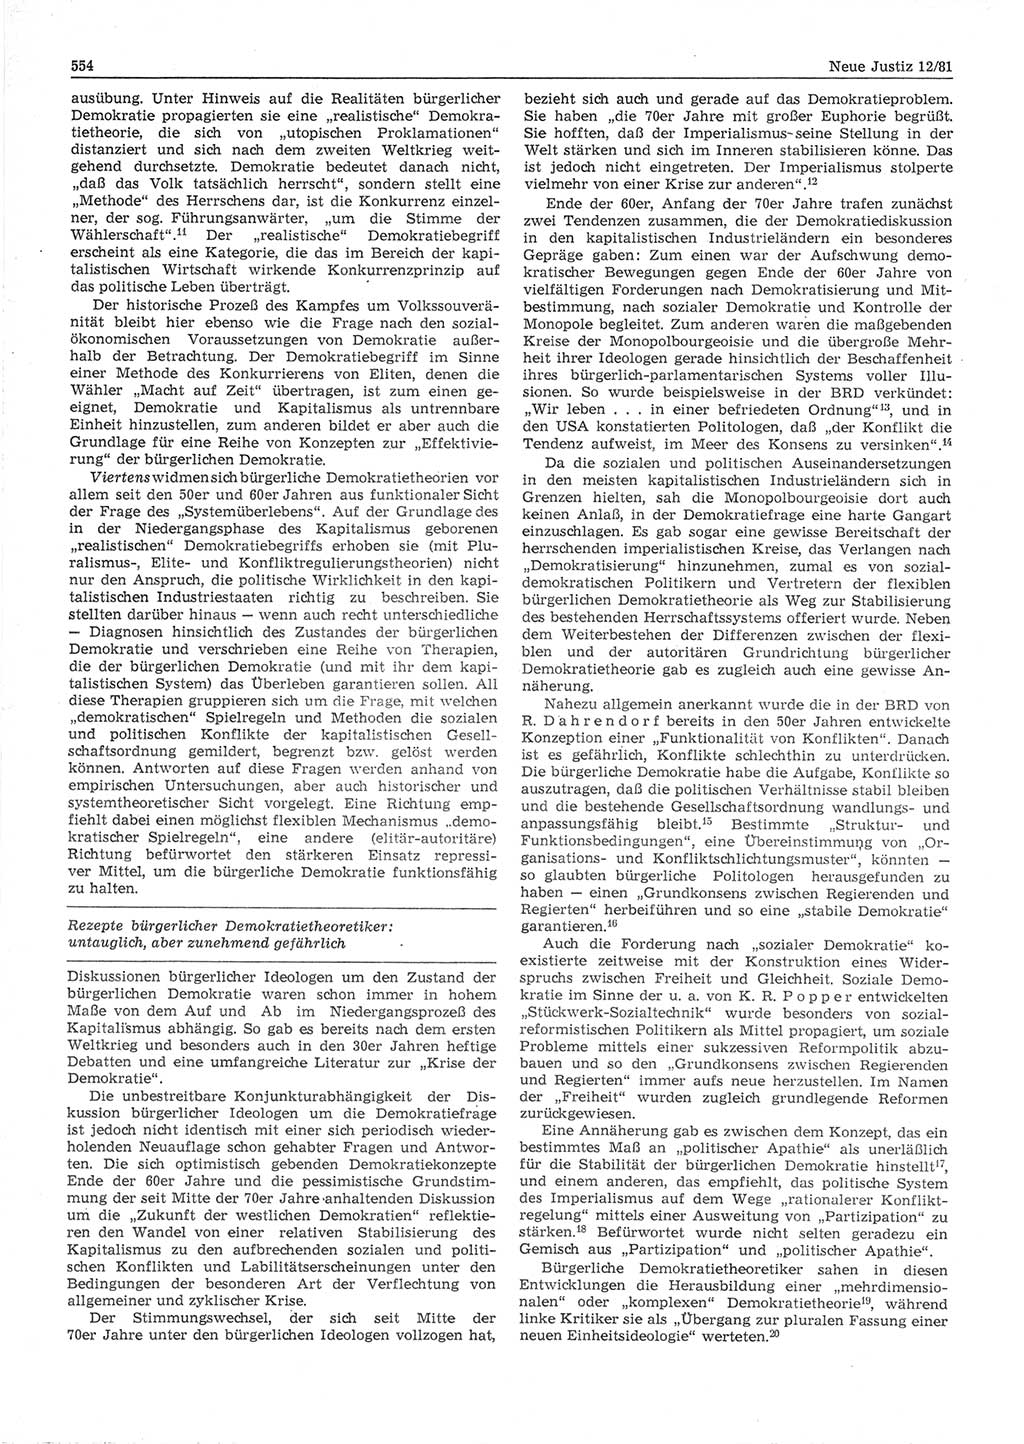 Neue Justiz (NJ), Zeitschrift für sozialistisches Recht und Gesetzlichkeit [Deutsche Demokratische Republik (DDR)], 35. Jahrgang 1981, Seite 554 (NJ DDR 1981, S. 554)